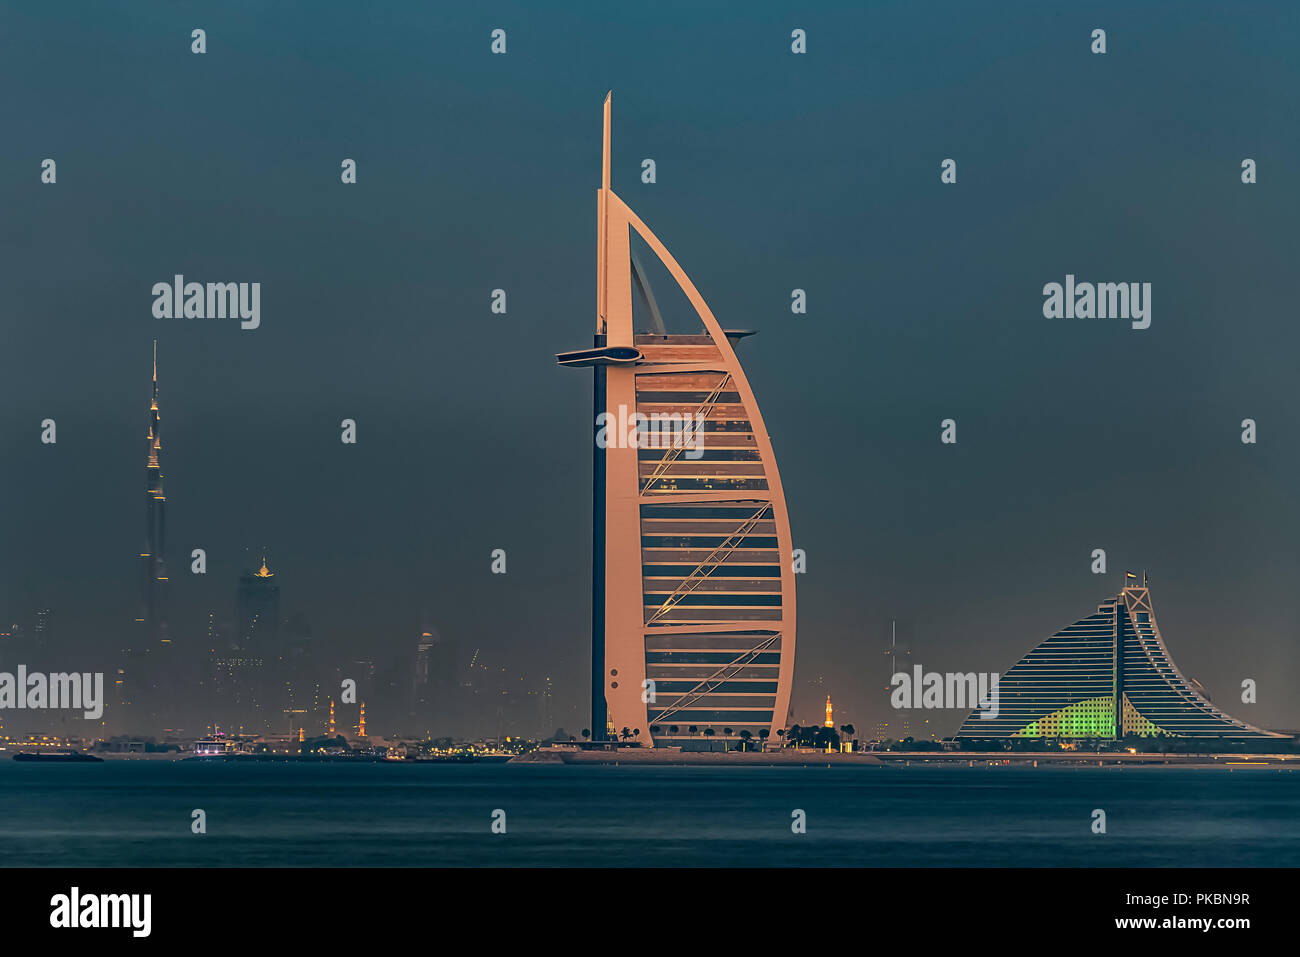 Dubai city by night Stock Photo